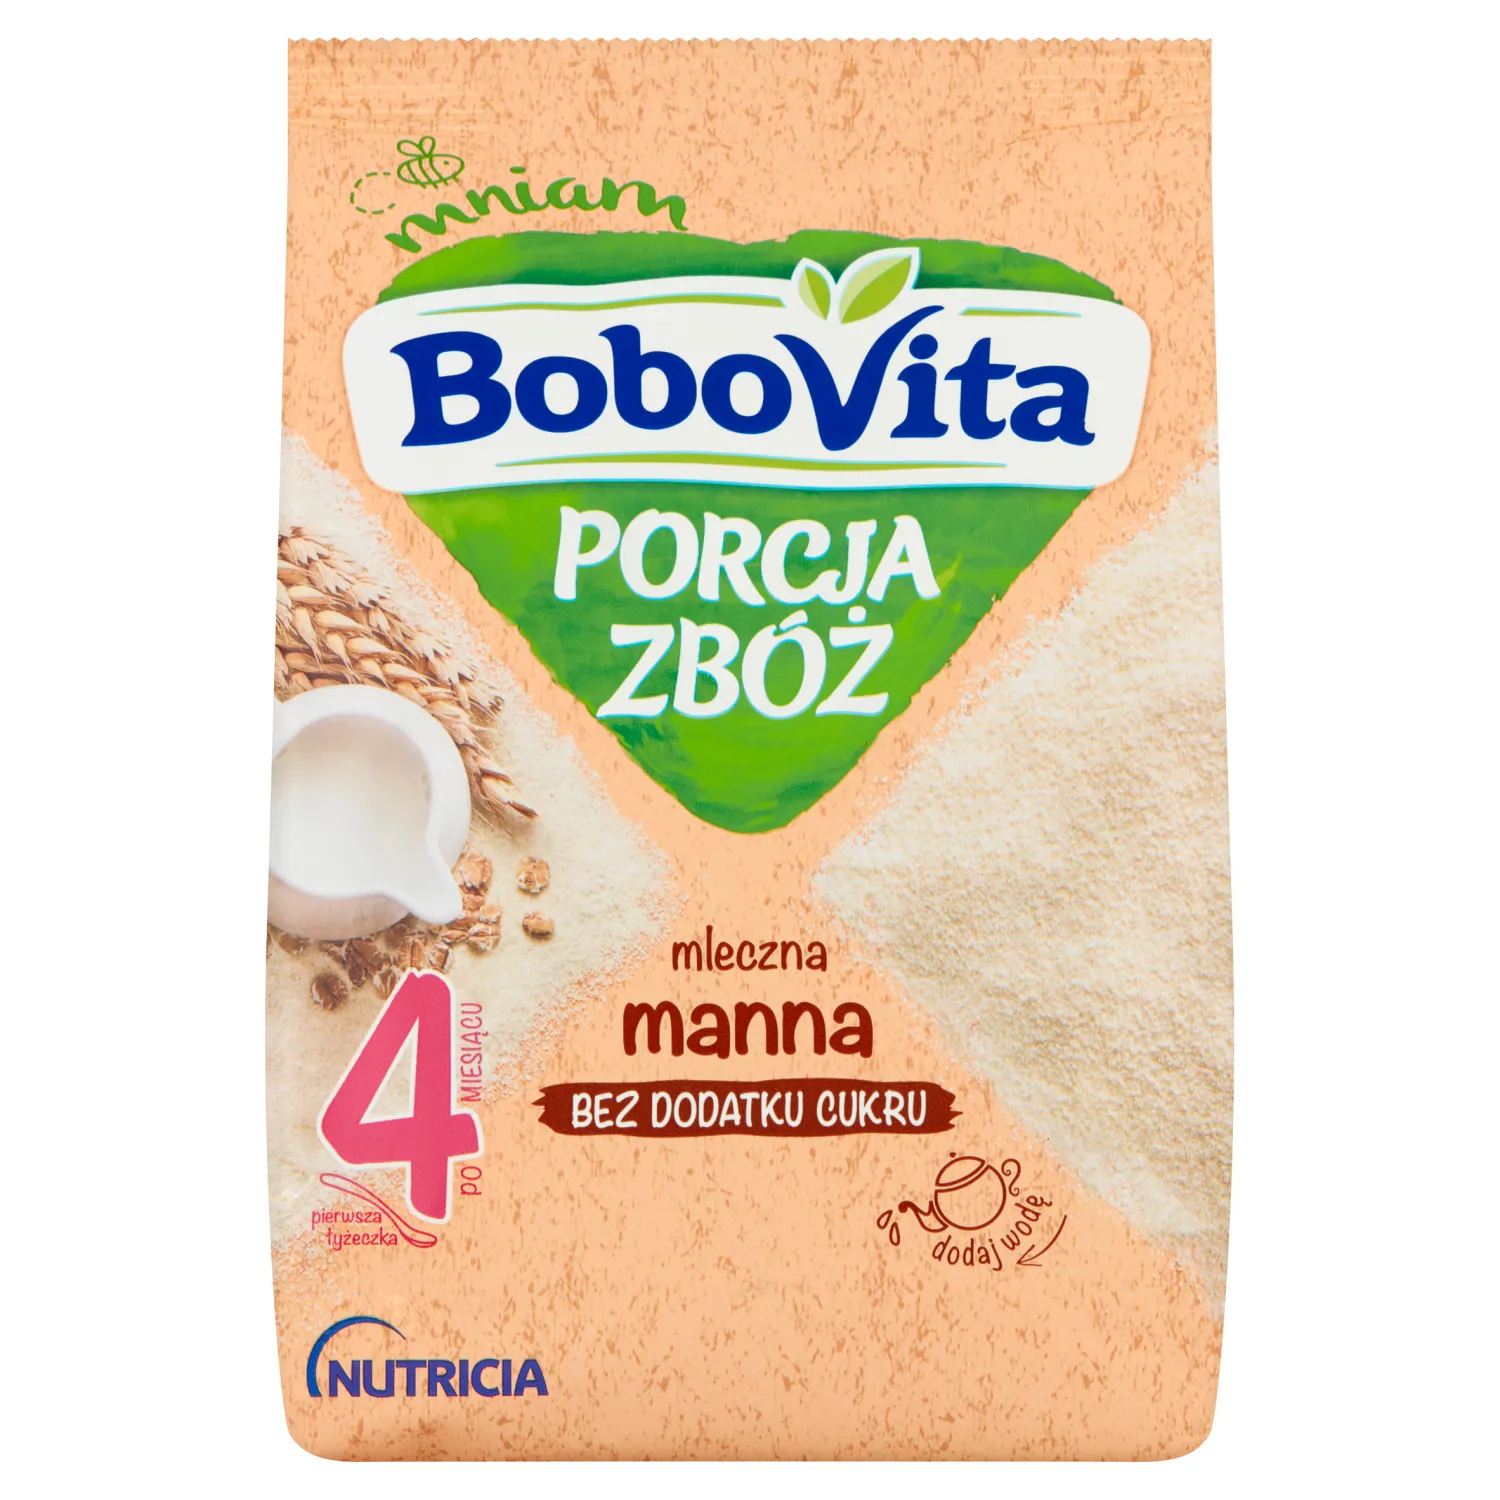 BoboVita Porcja Zbóż mleczna kaszka manna, 210 g